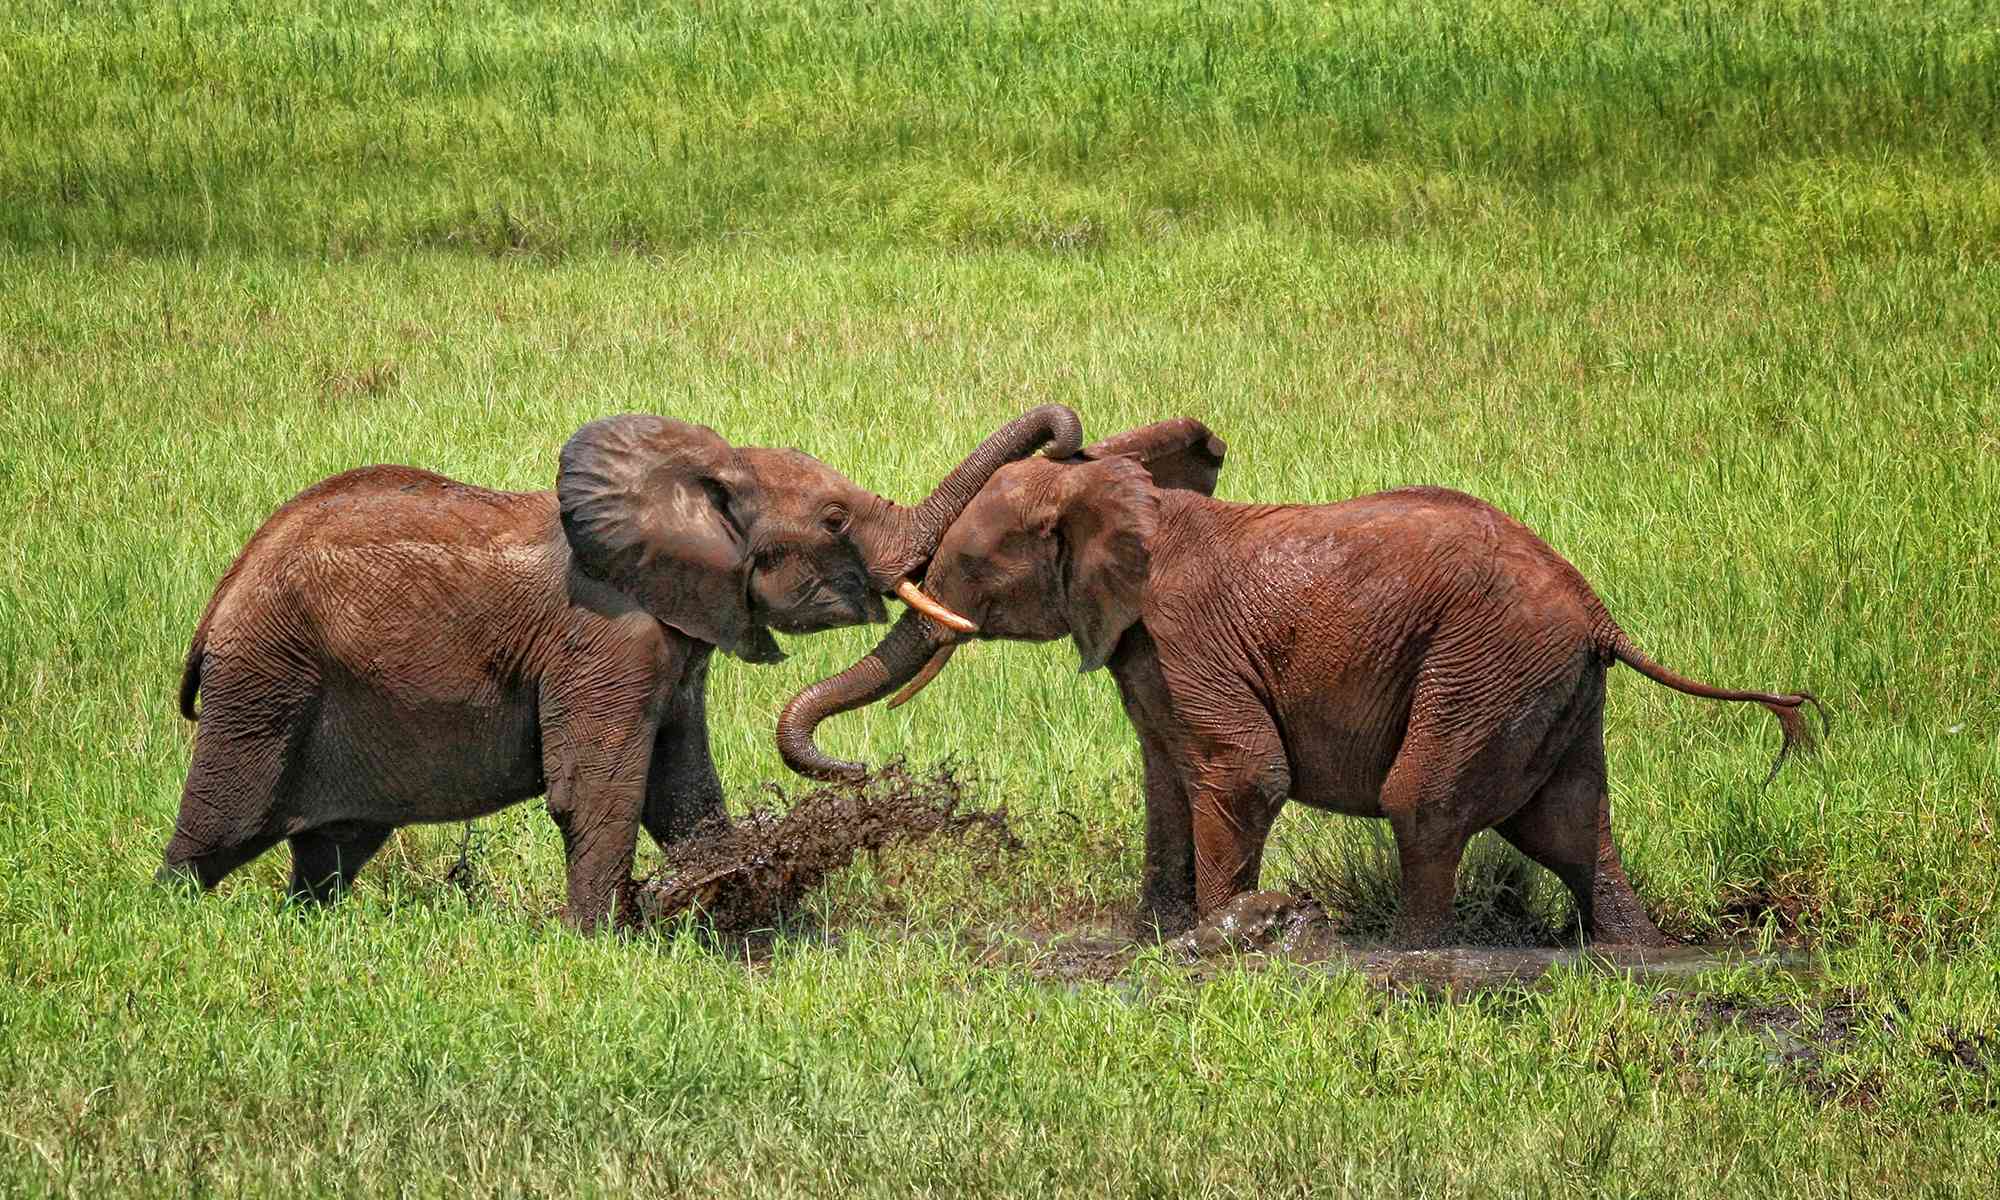 Little Elephants Playing